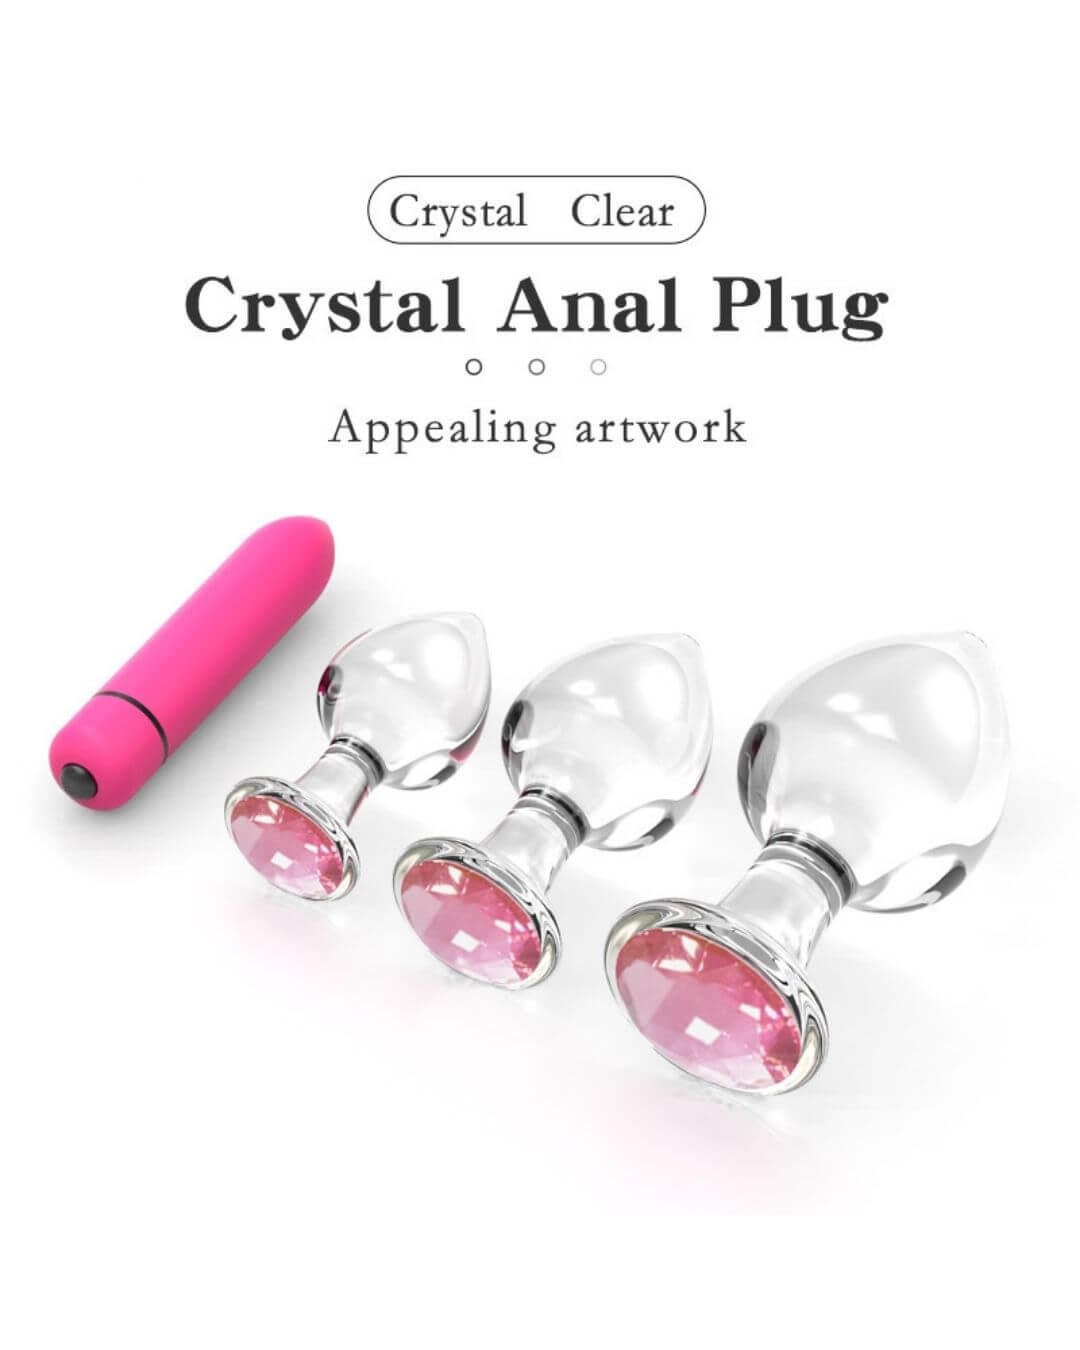 Glass Anal Plug Diamond Set with Pen Vibrator